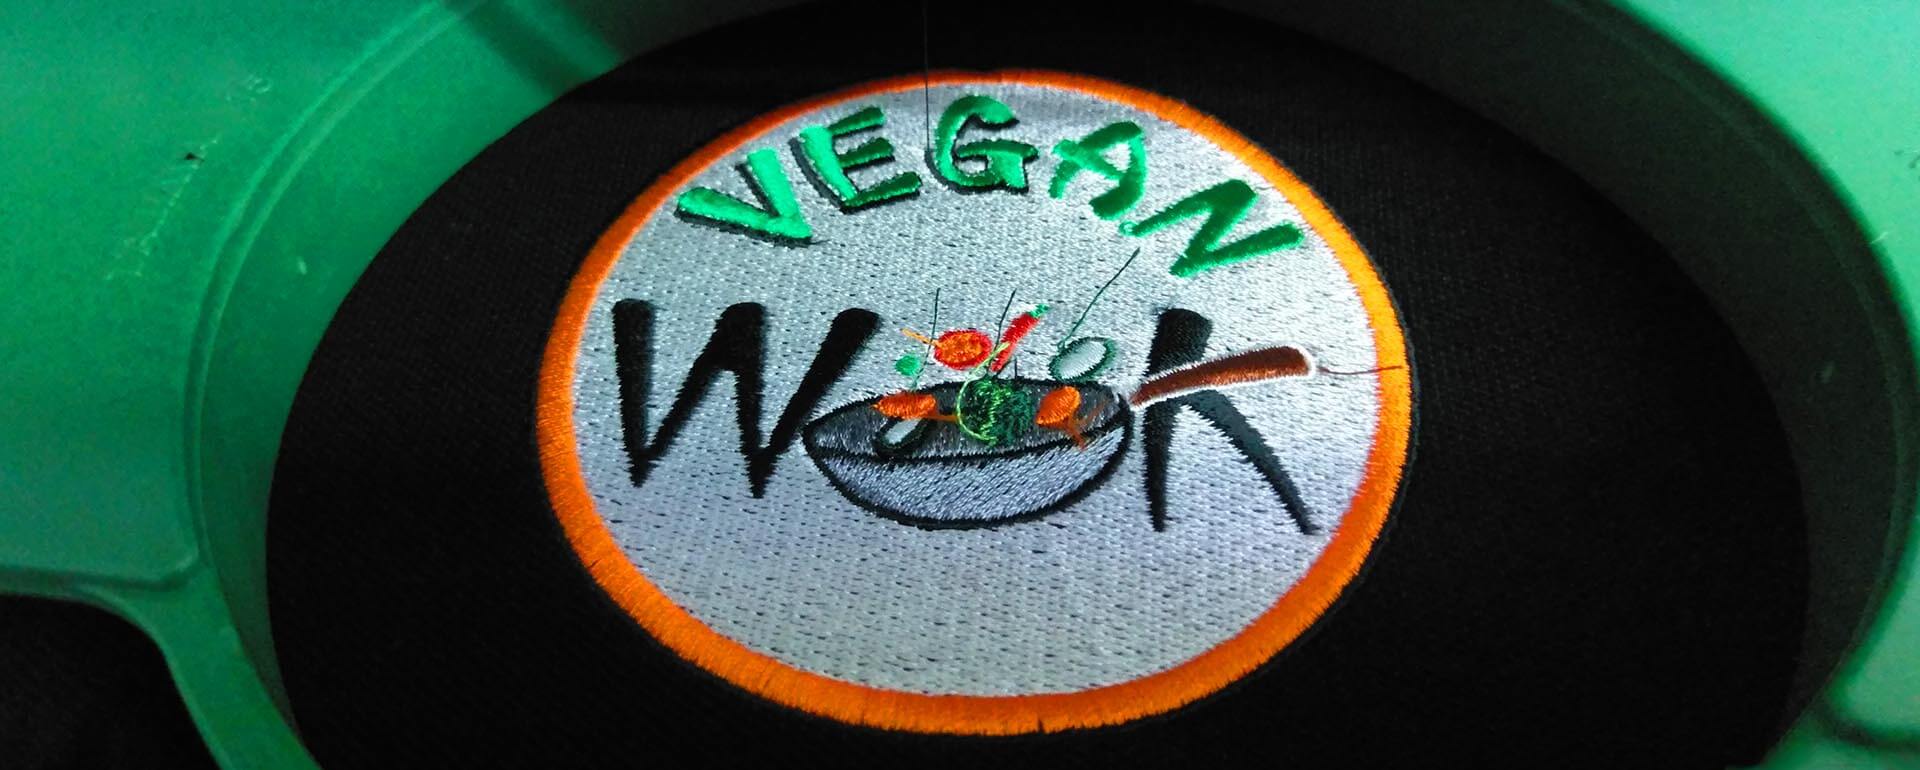 Norwich Vegan Takeaway Vegan Wok Logo Embroidery